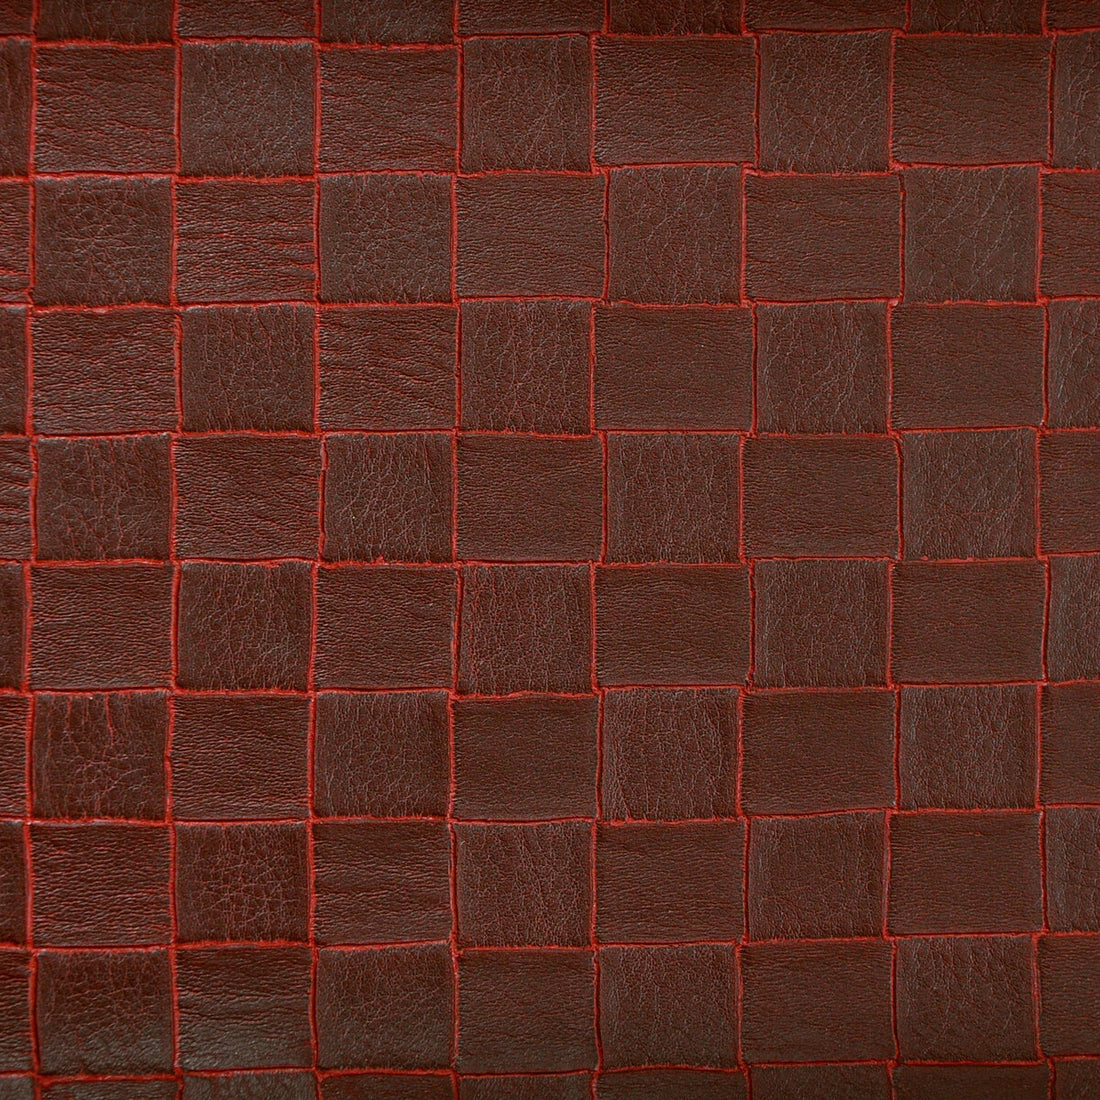 Kravet Design fabric in vorik-66 color - pattern VORIK.66.0 - by Kravet Design